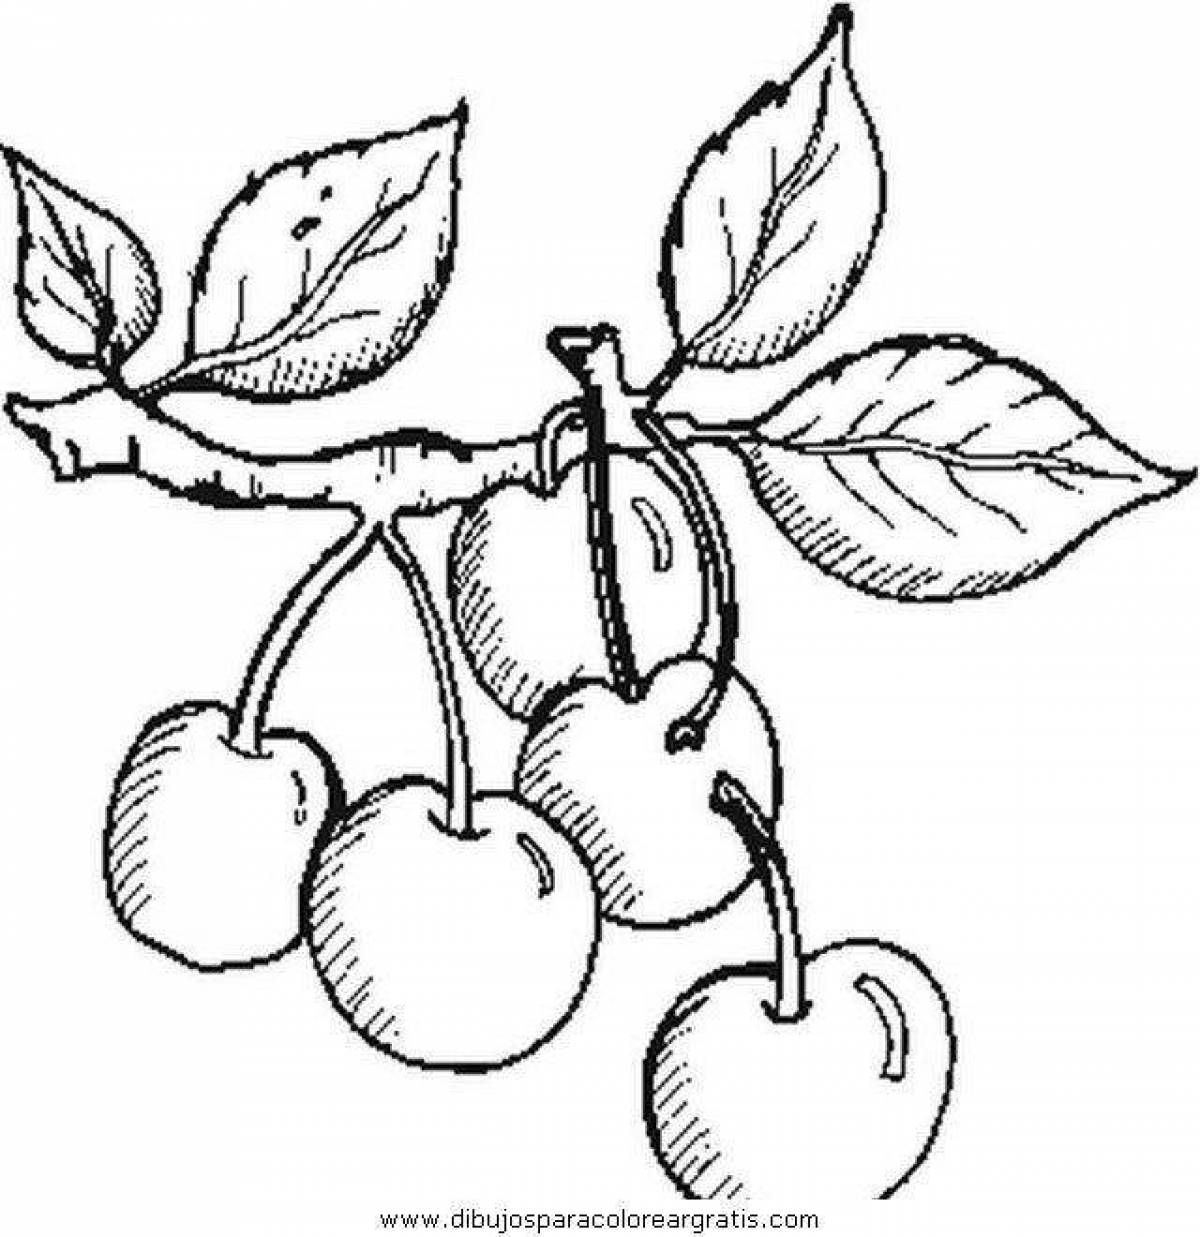 Плодовые деревья (вишня, груша) задание